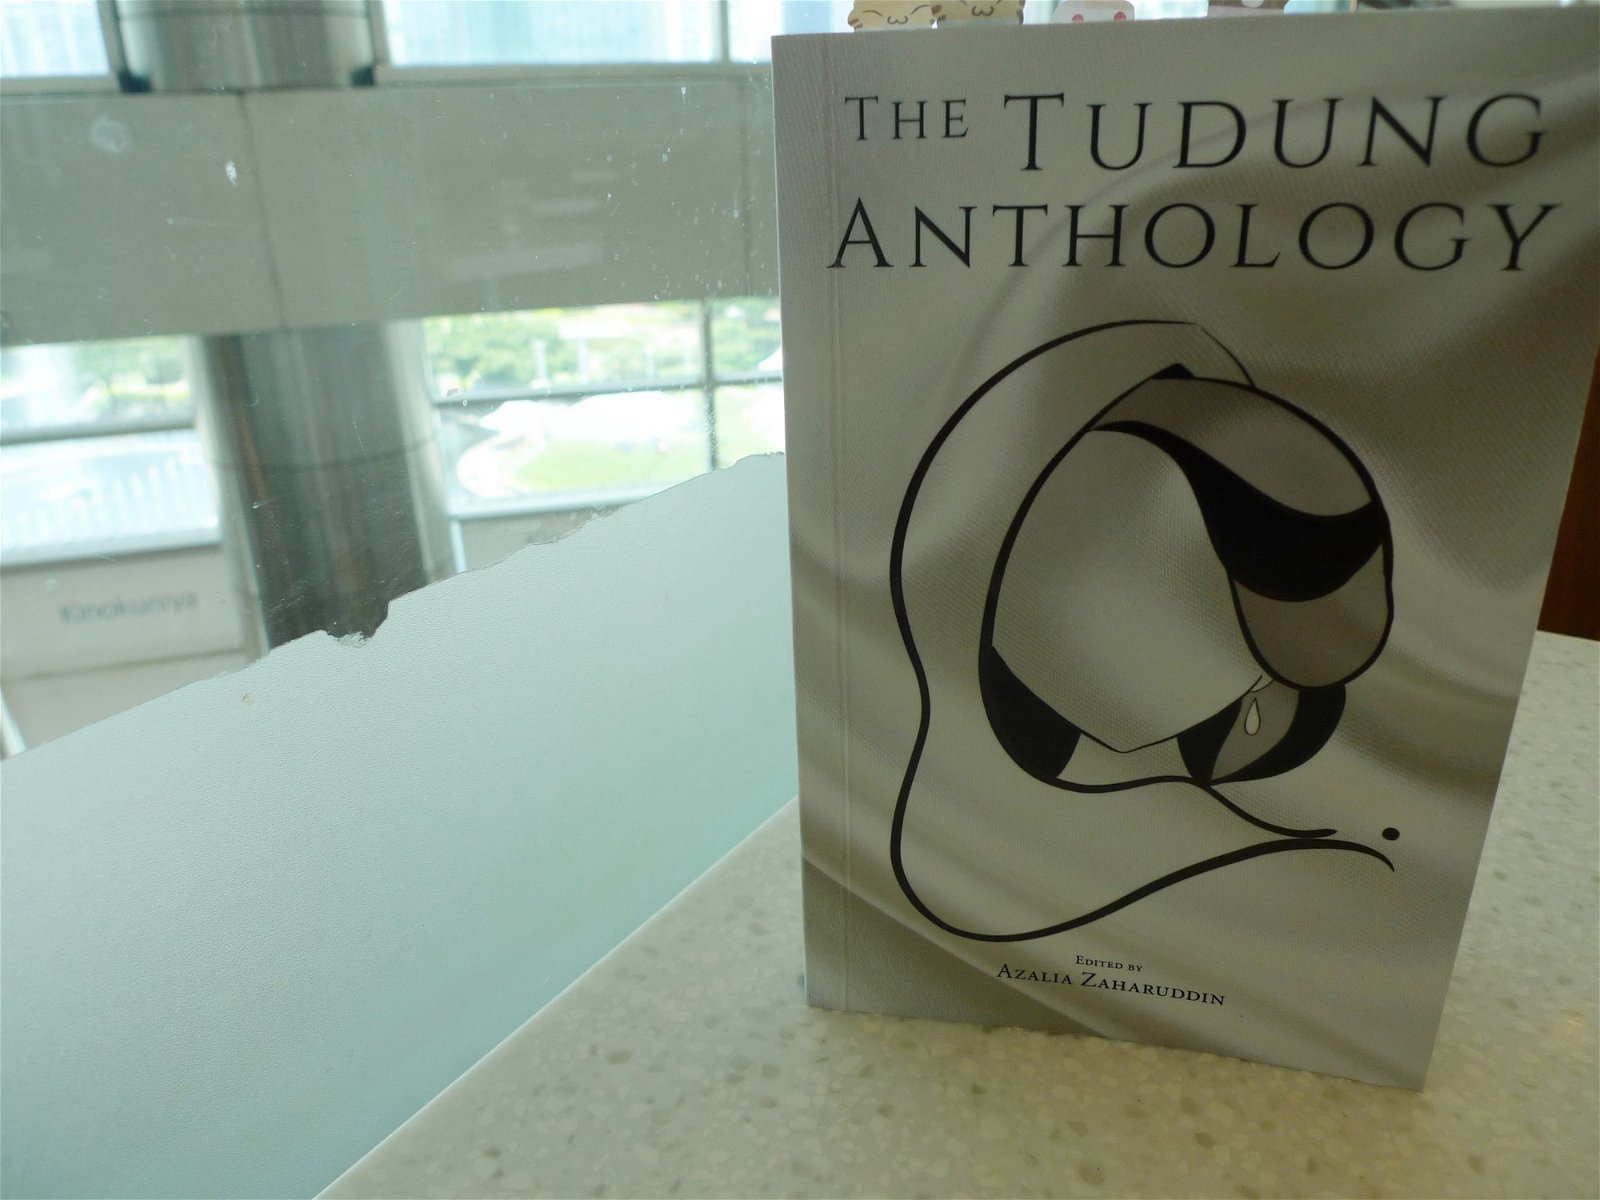 几乎所有穆斯林女性的一生中，无可避免地需面对无数次来自各方的追问关于头巾的种种问题。《头巾文选》(The Tudung Anthology)一共收录22篇的女性书写，她们来自不同种族和社会背景。